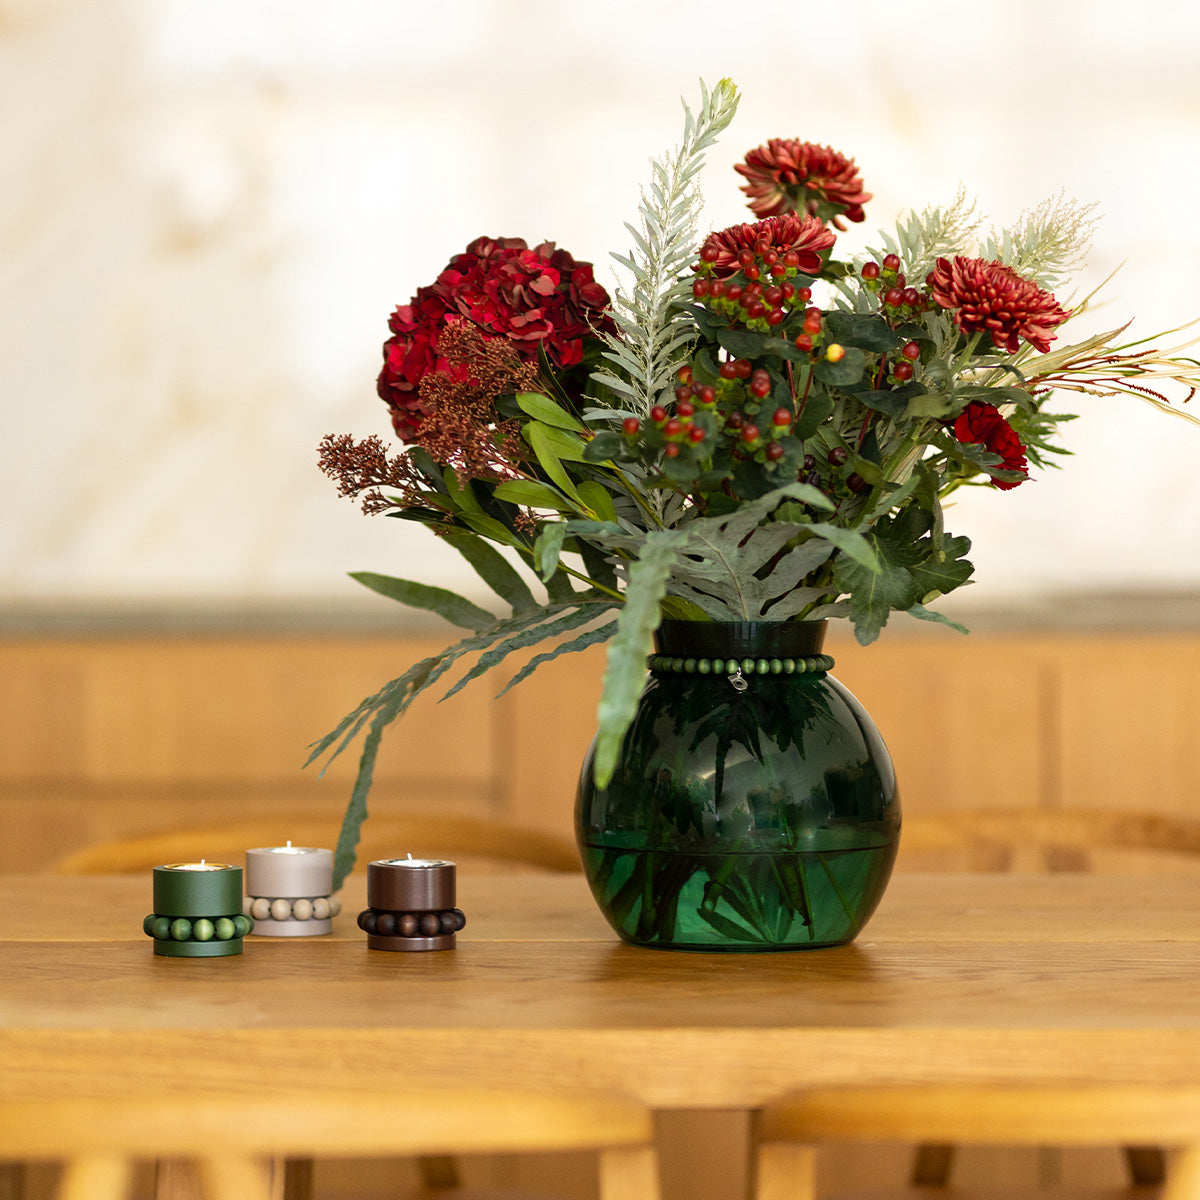 Kupla vase, 22 cm, green